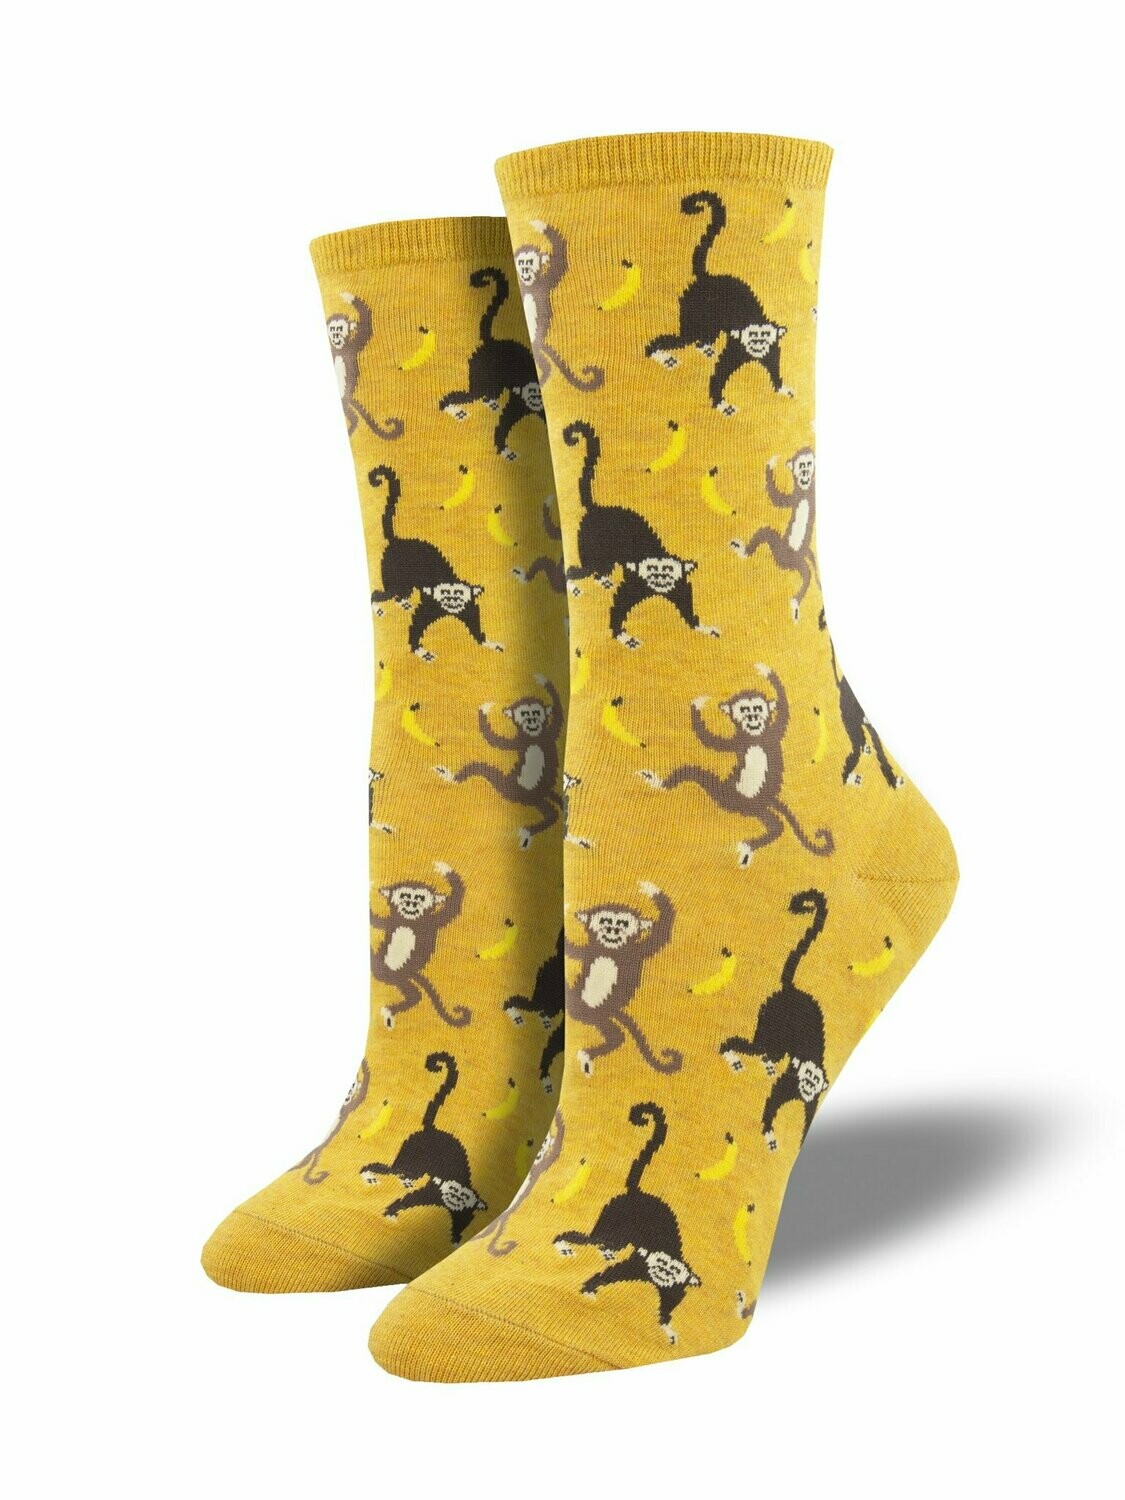 Going Bananas Gold Heather- Women's Socks